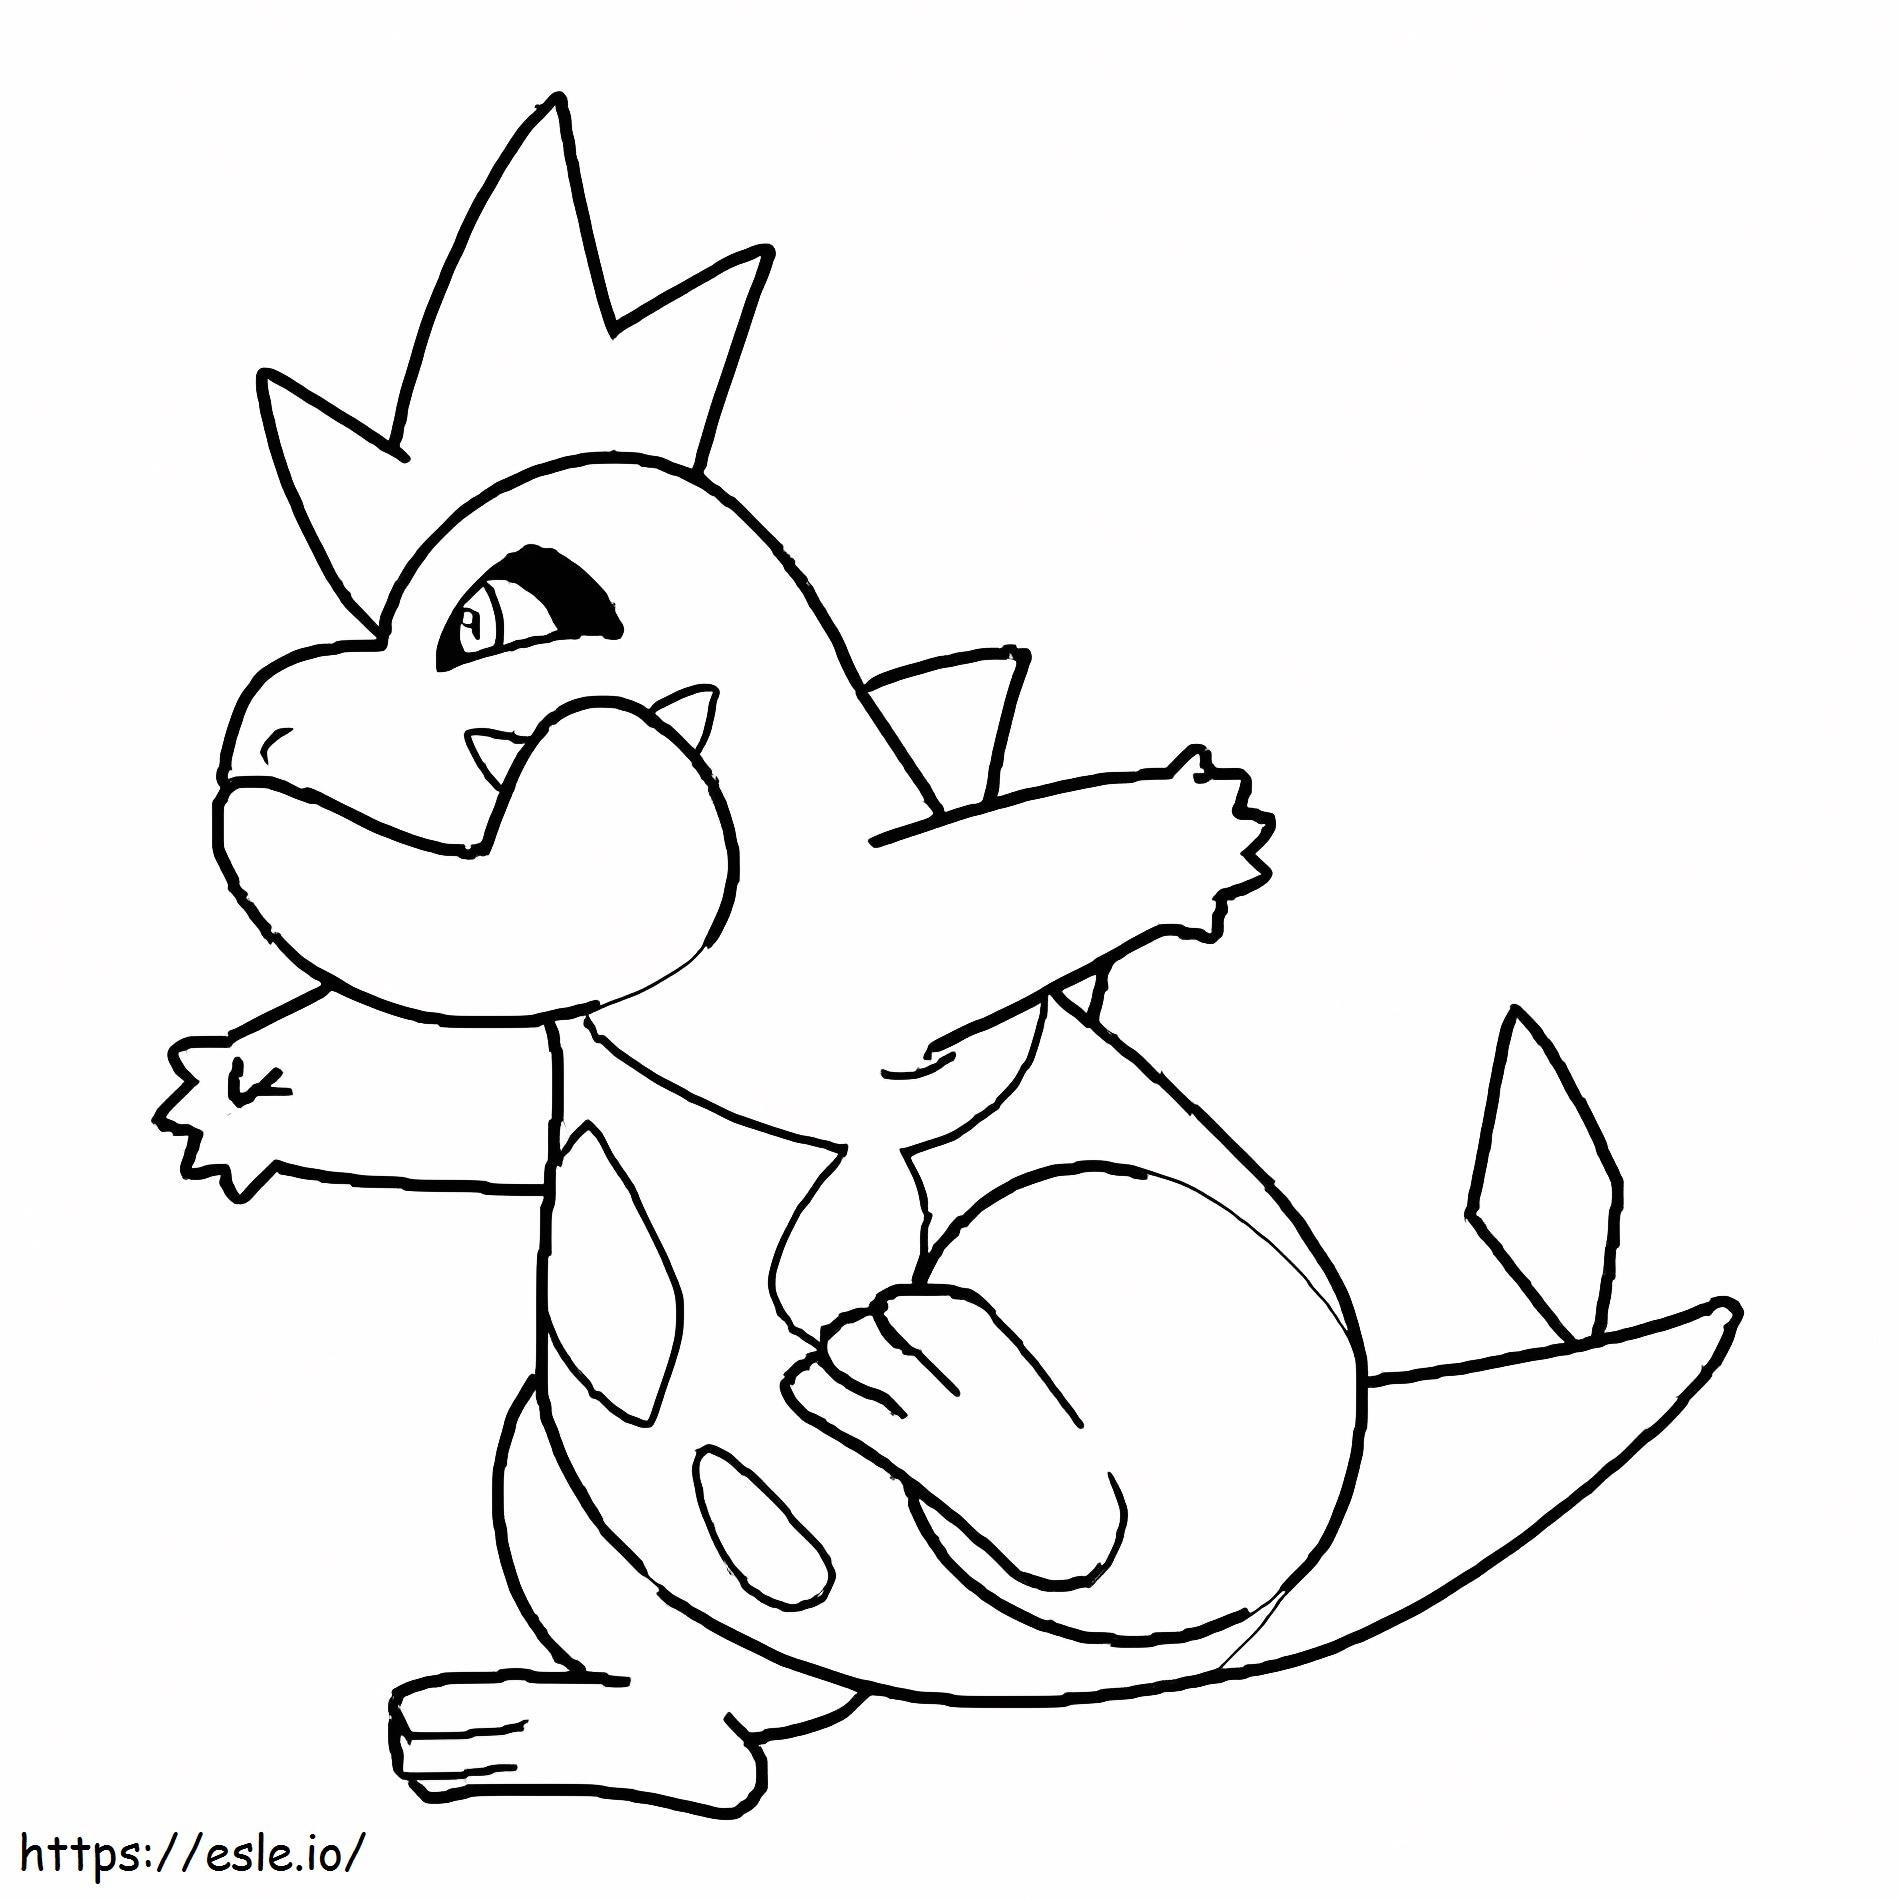 Coloriage Pokémon Croconaw gratuit à imprimer dessin